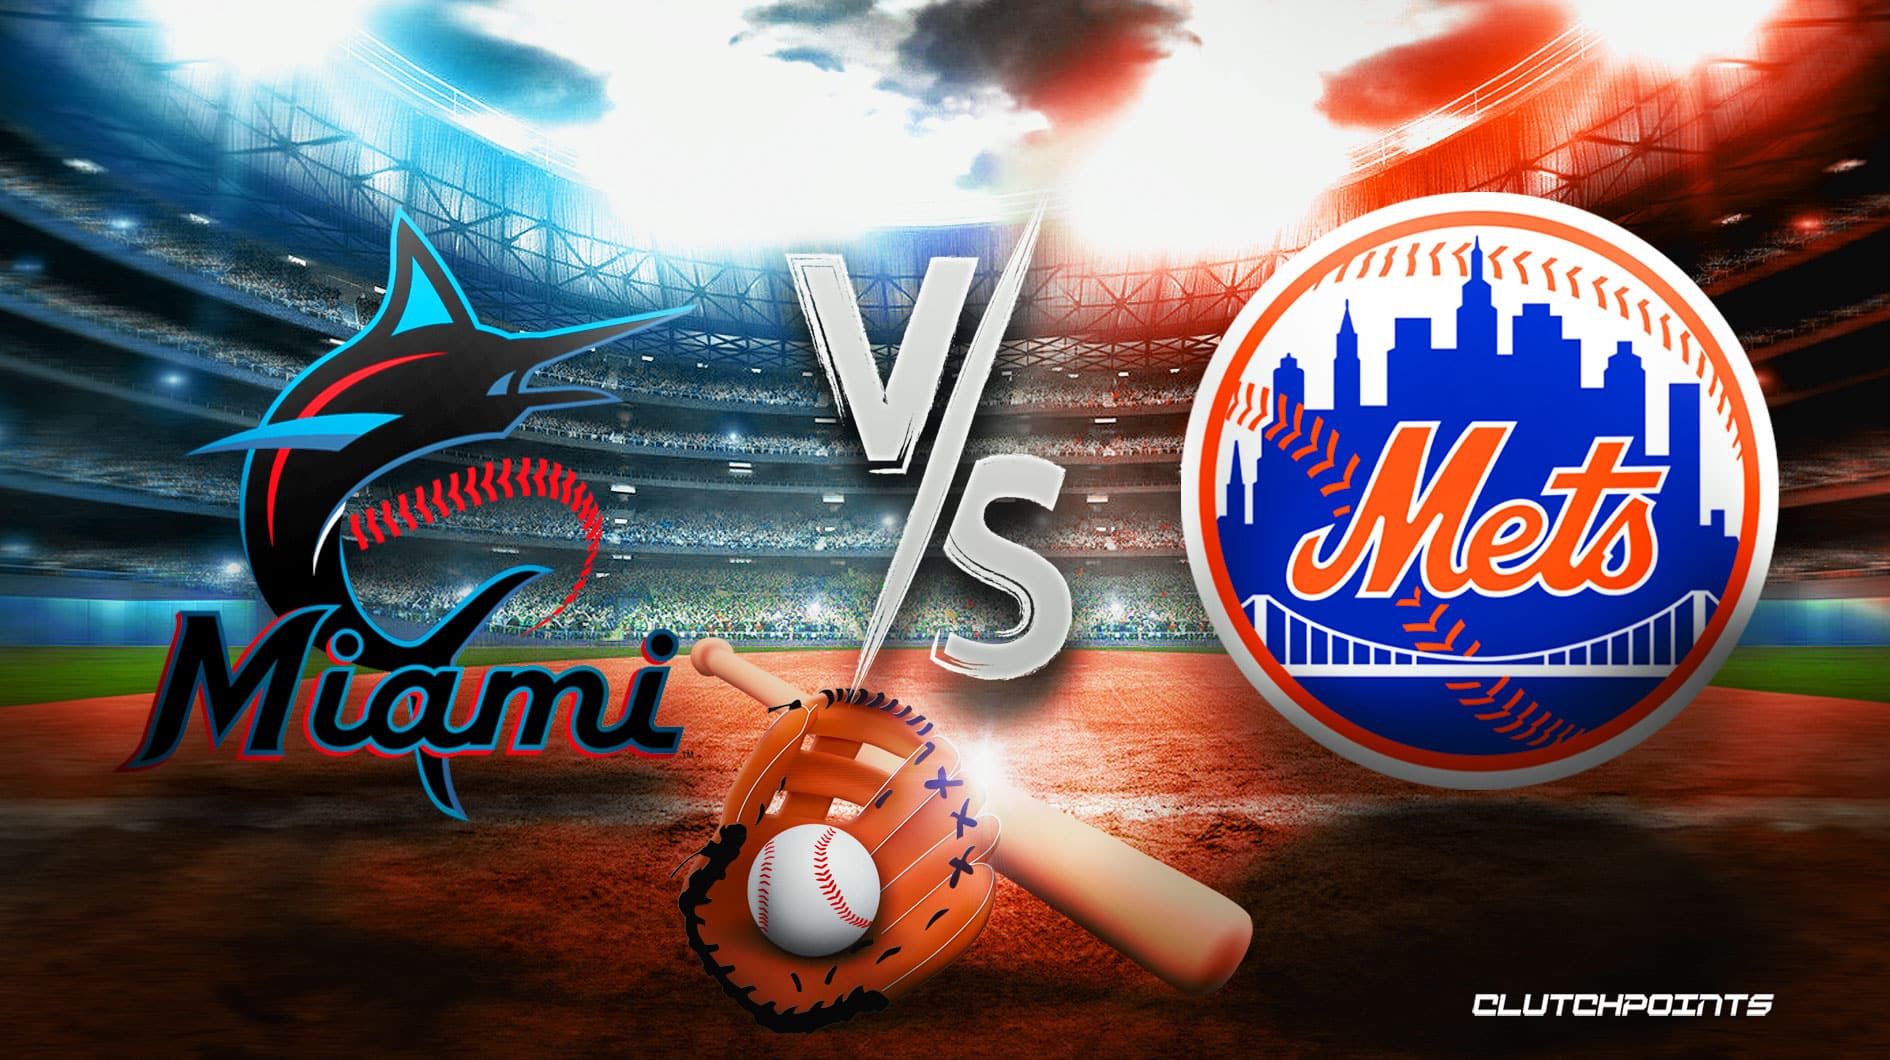 MLB Game Preview & Predictions: Marlins vs. Mets—May 22, 2021 - Fish Stripes